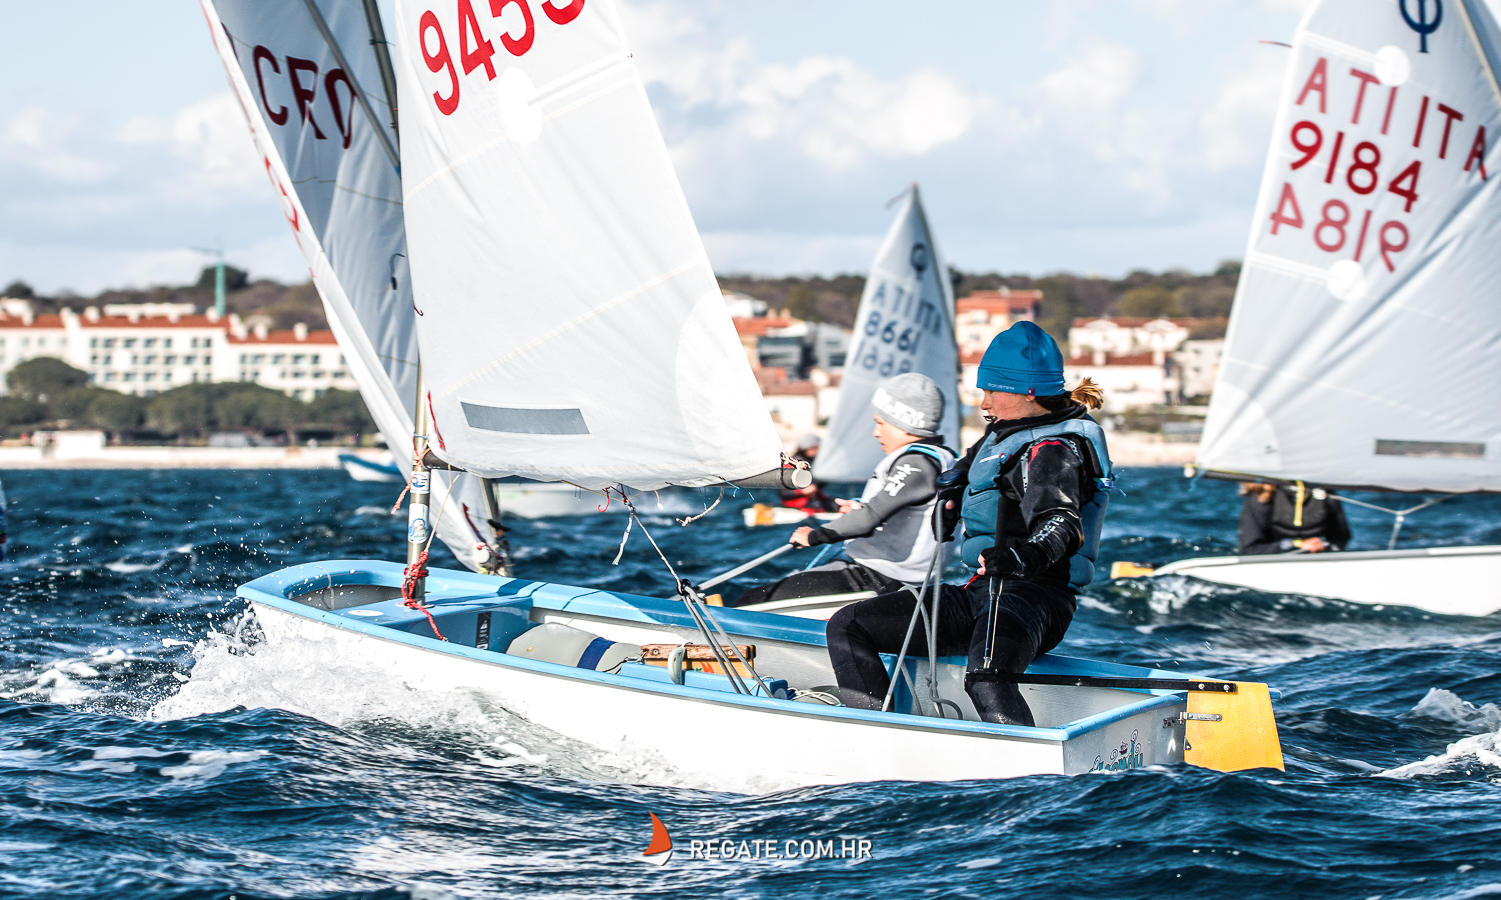 IMG_8784 - Clivo Sailing Cup - subota